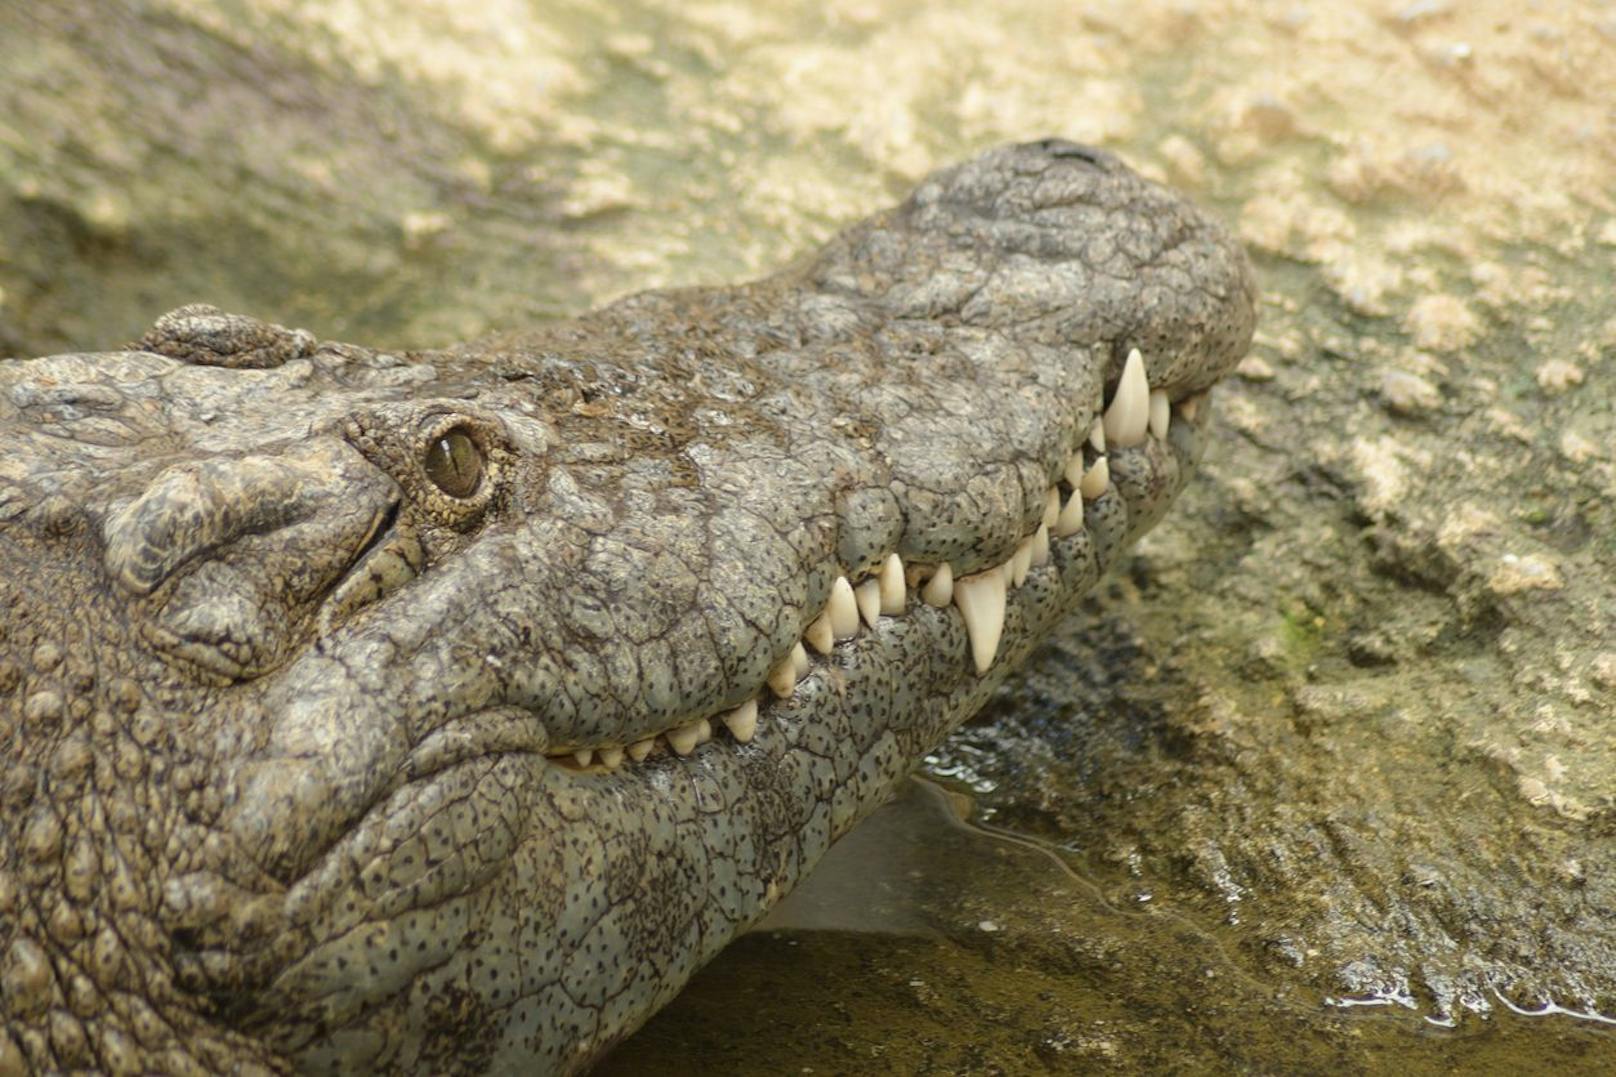 Am leichtesten erkennt man das <strong>Krokodil</strong> an den Zähnen - Bei Krokodilen sieht man bei geschlossenem Maul die <strong>untere UND obere Zahnreihe</strong> - vor allem der 4. untere Zahn fällt auf und ragt über Oberkiefer.